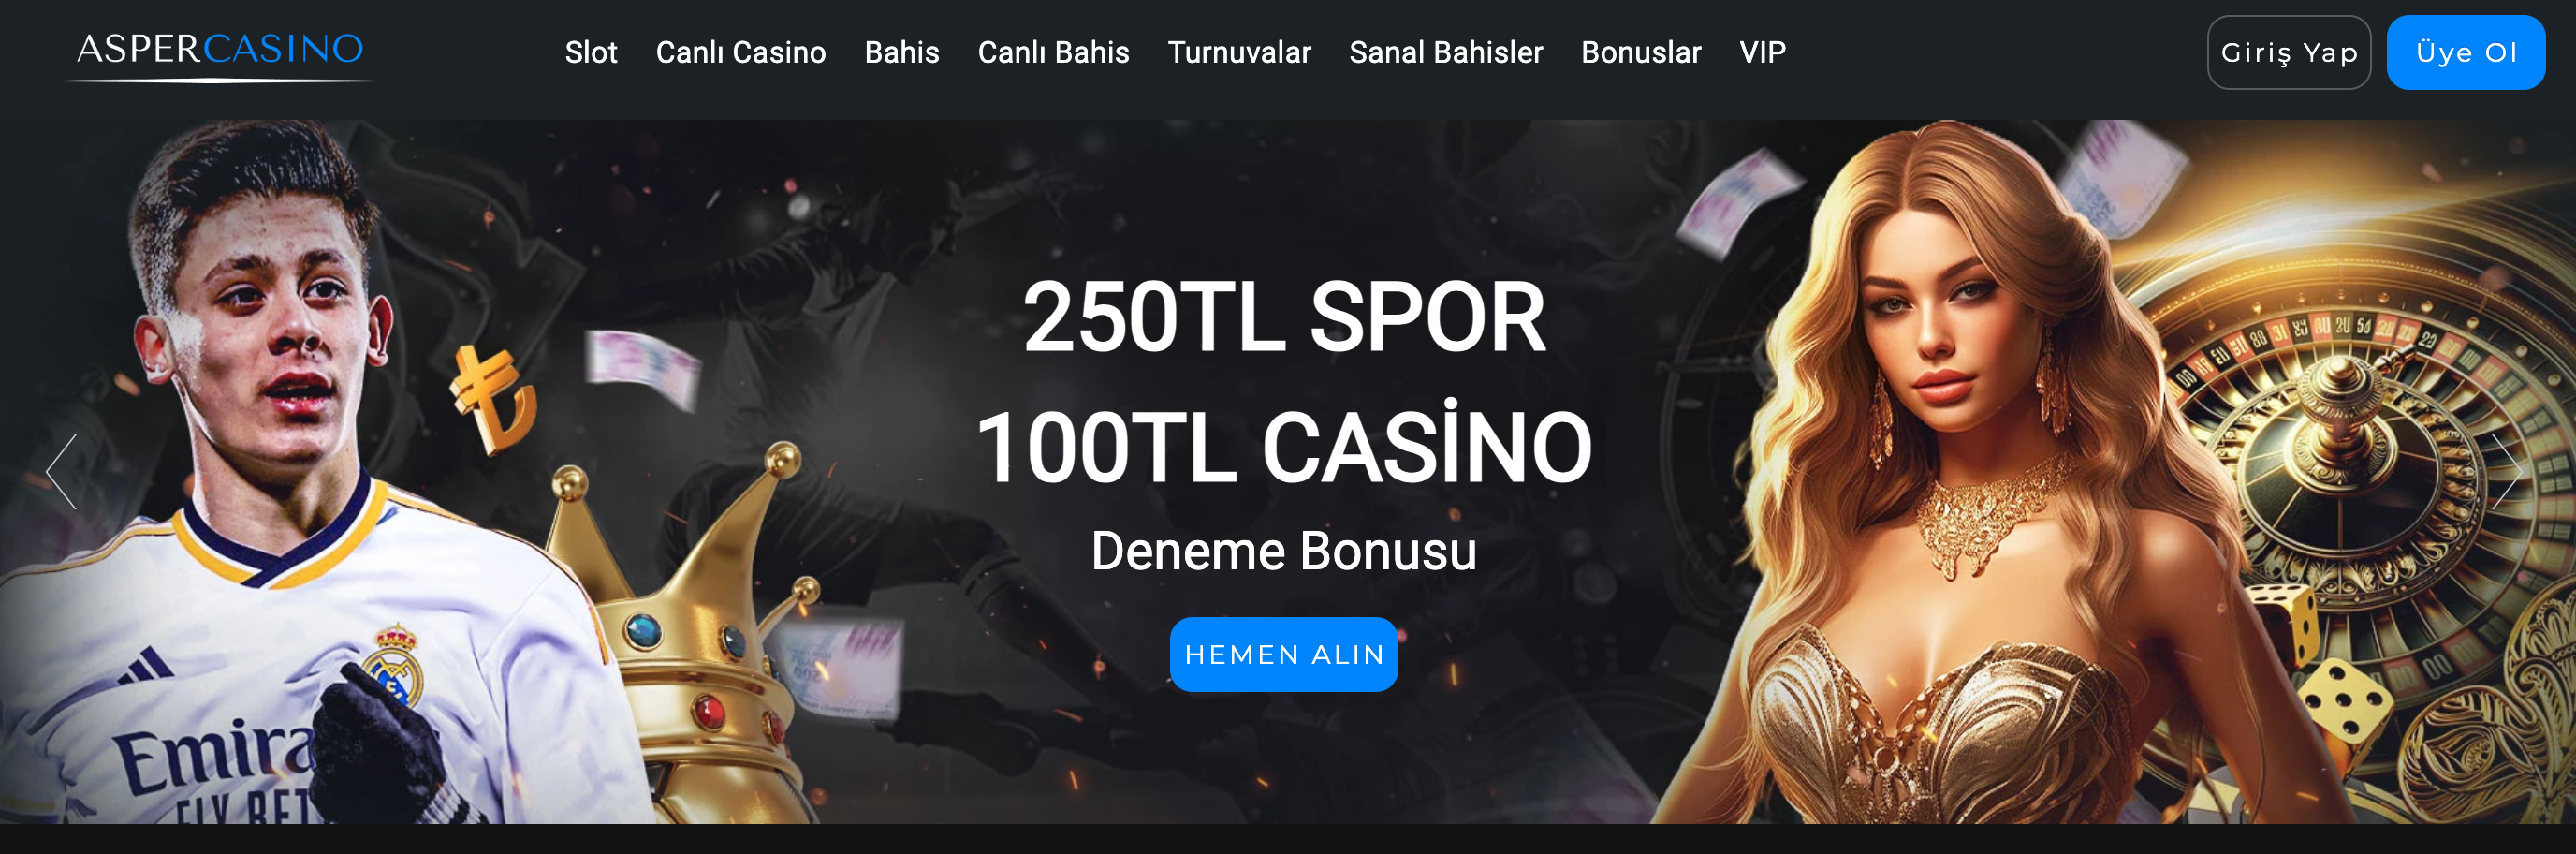 Asper Casino Giriş